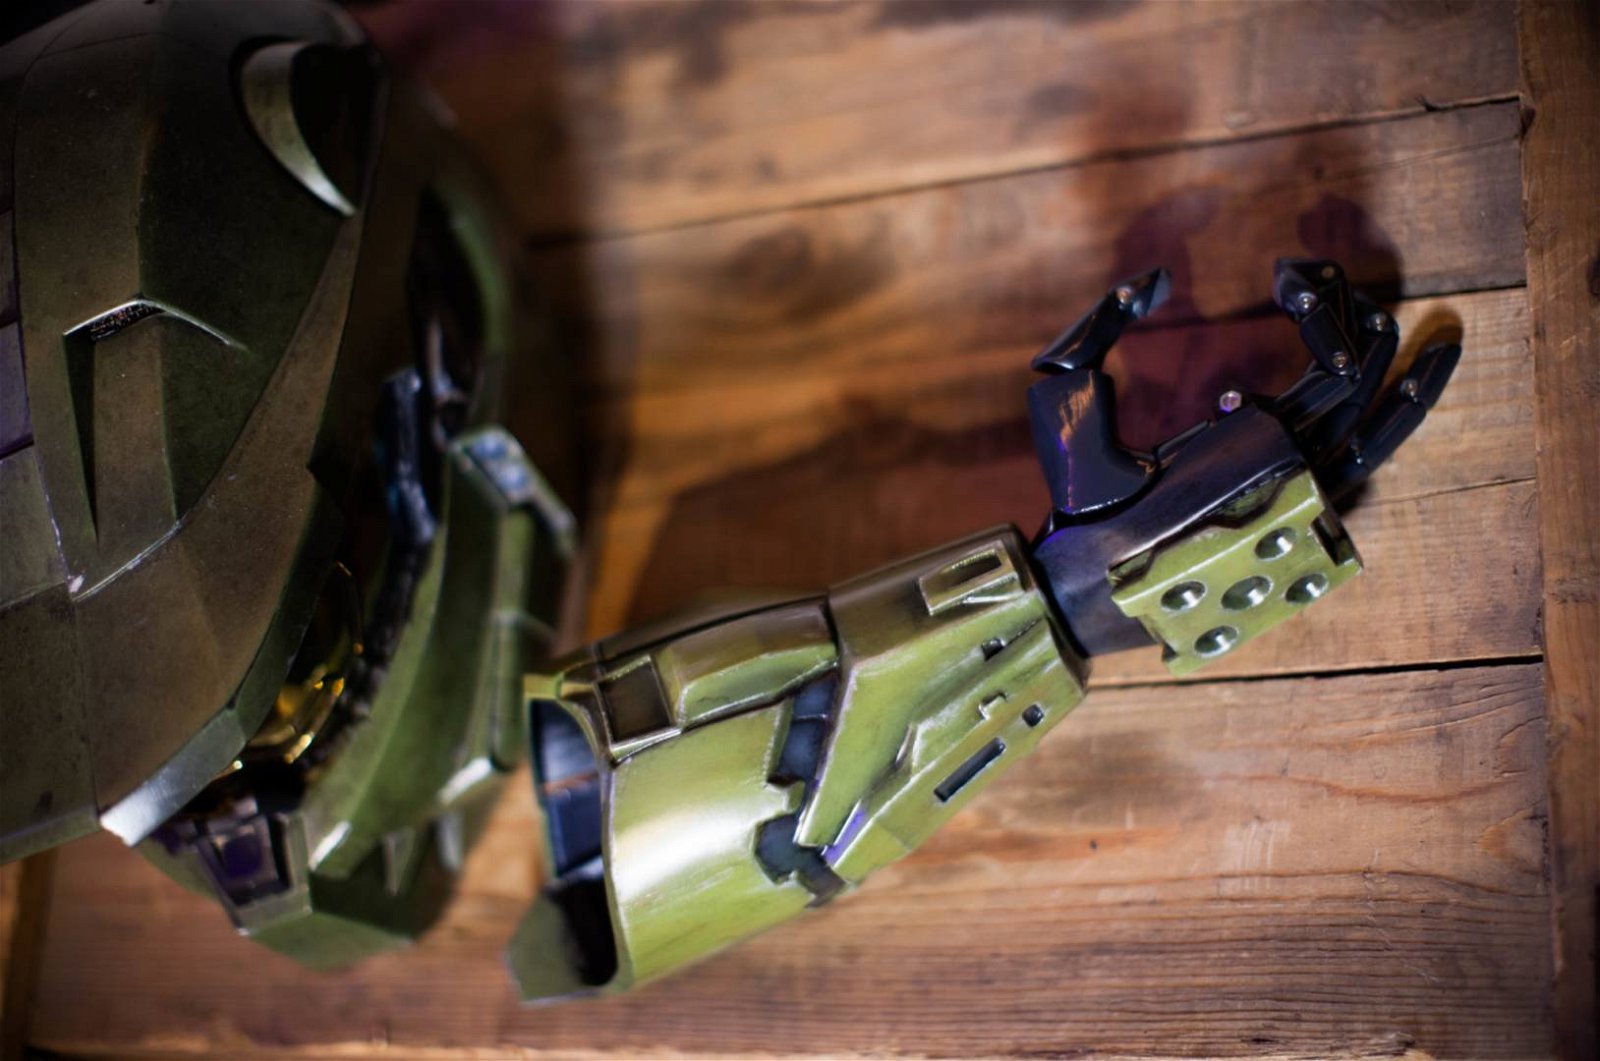 Immagine di Le braccia protesiche in stile Halo e League of Legends di Limbitless Solutions